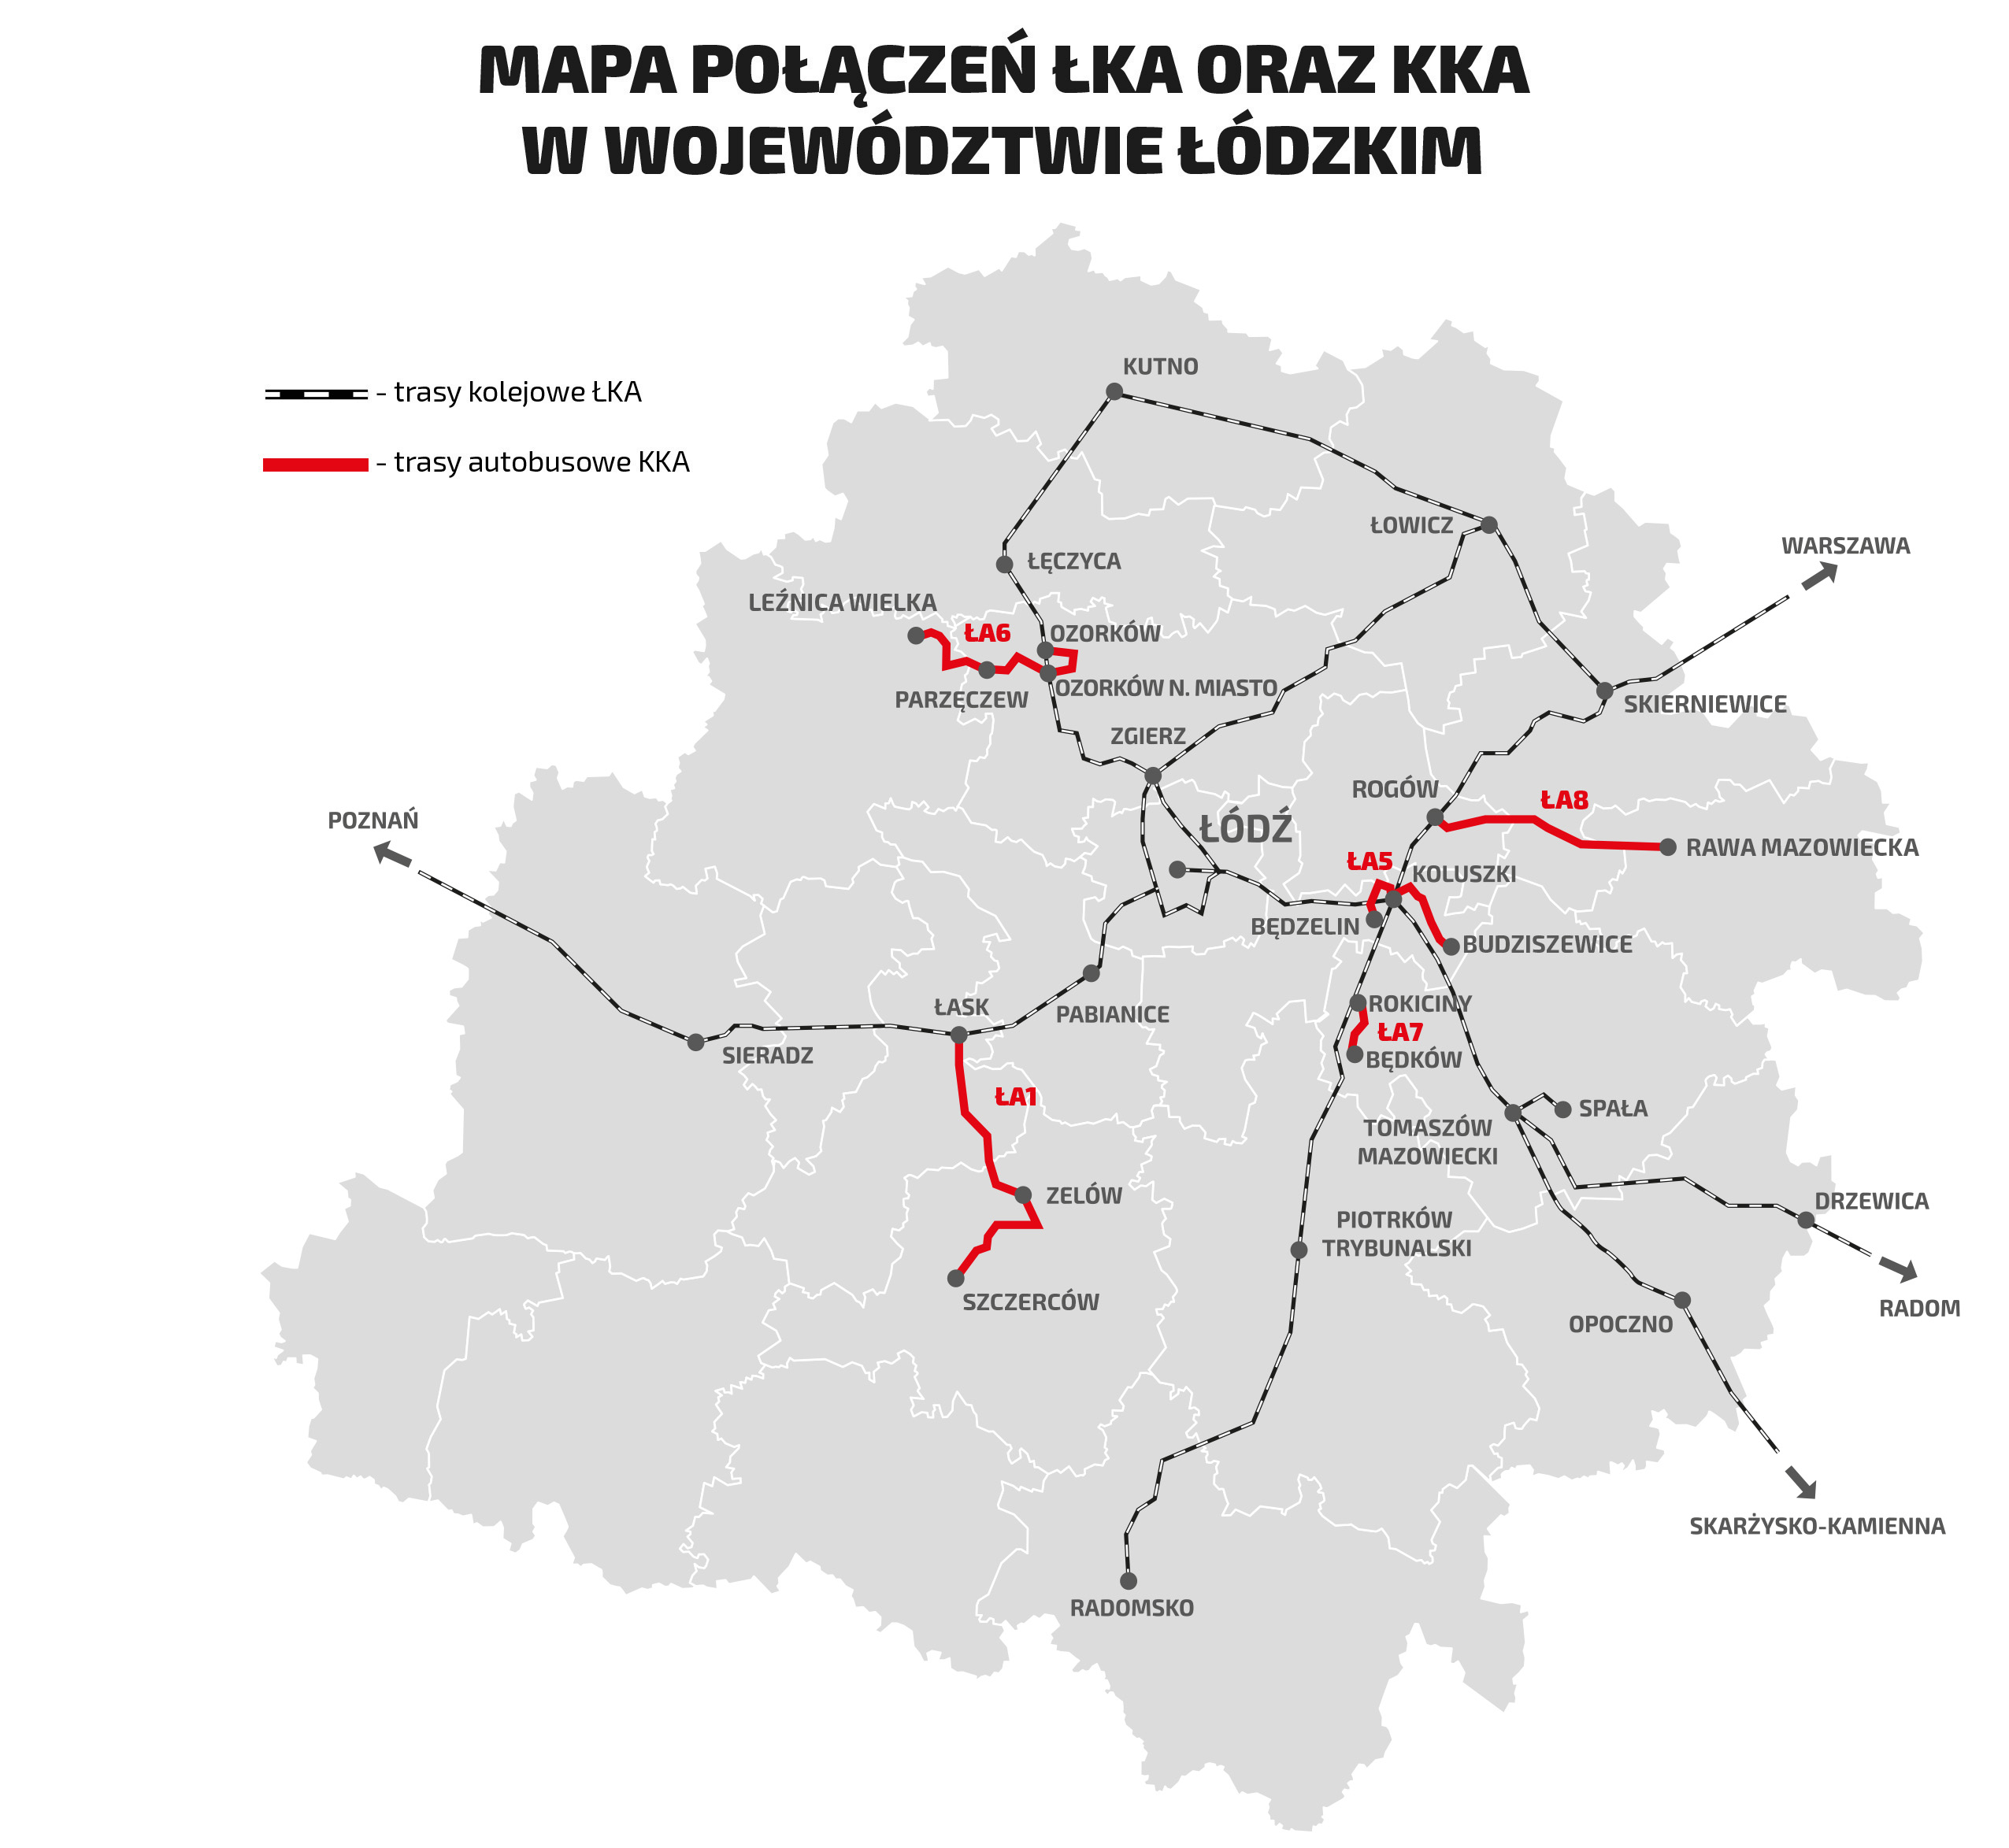 Mapa przedstawia kontur województwa łódzkiego i zaznaczone tory kolejowe oraz trasy wymienione powyżej.